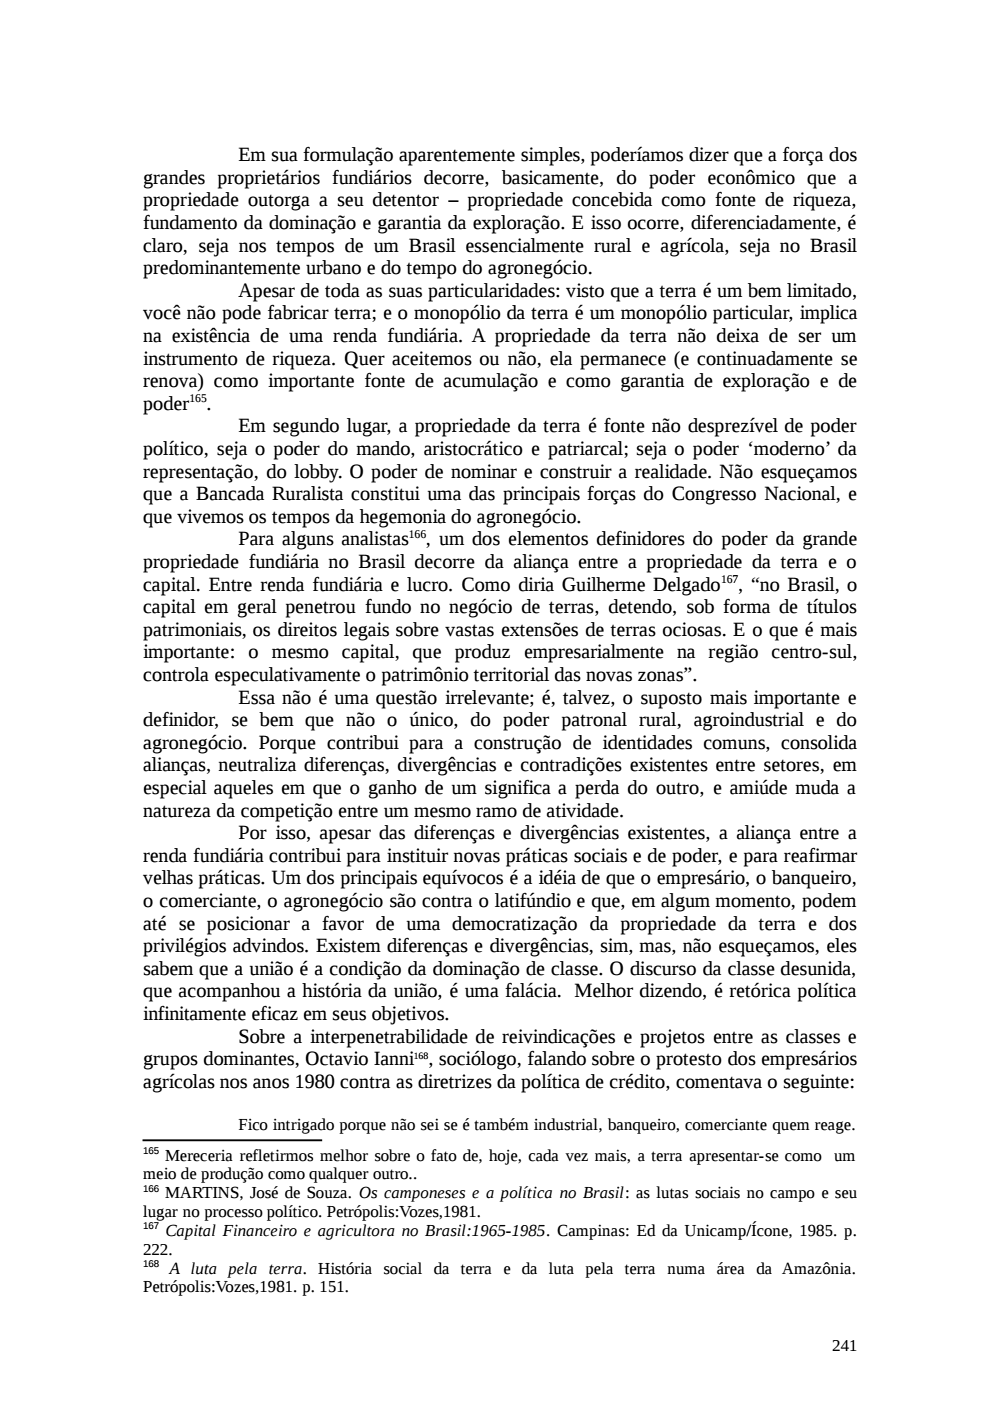 Page 241 from Relatório final da comissão